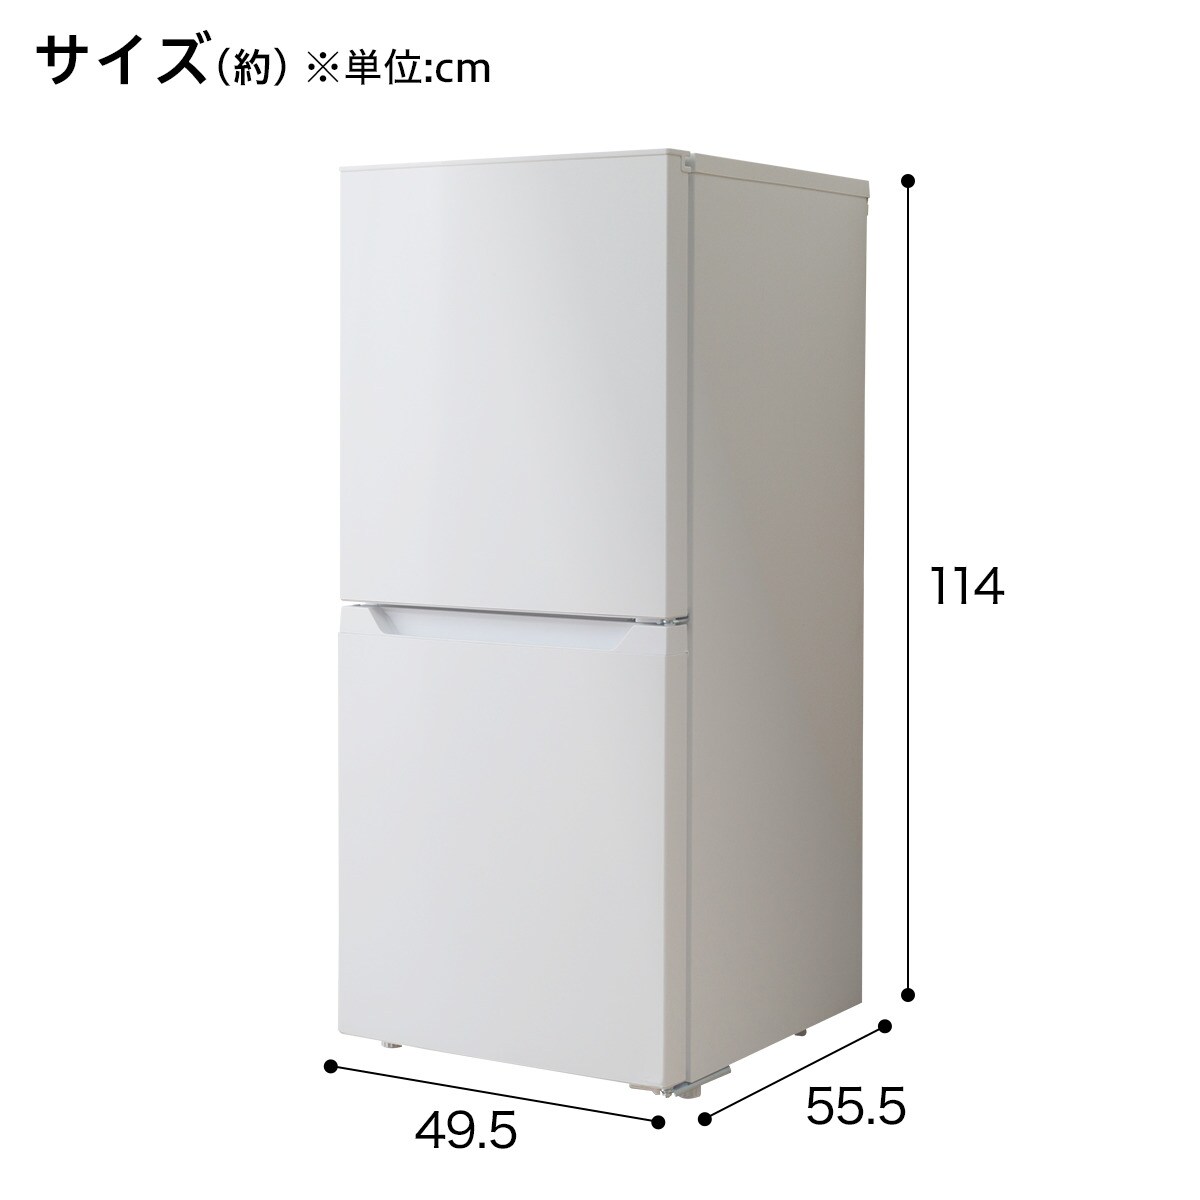 生活家電 冷蔵庫 121L ファン式2ドア冷蔵庫(NR121 ホワイト)